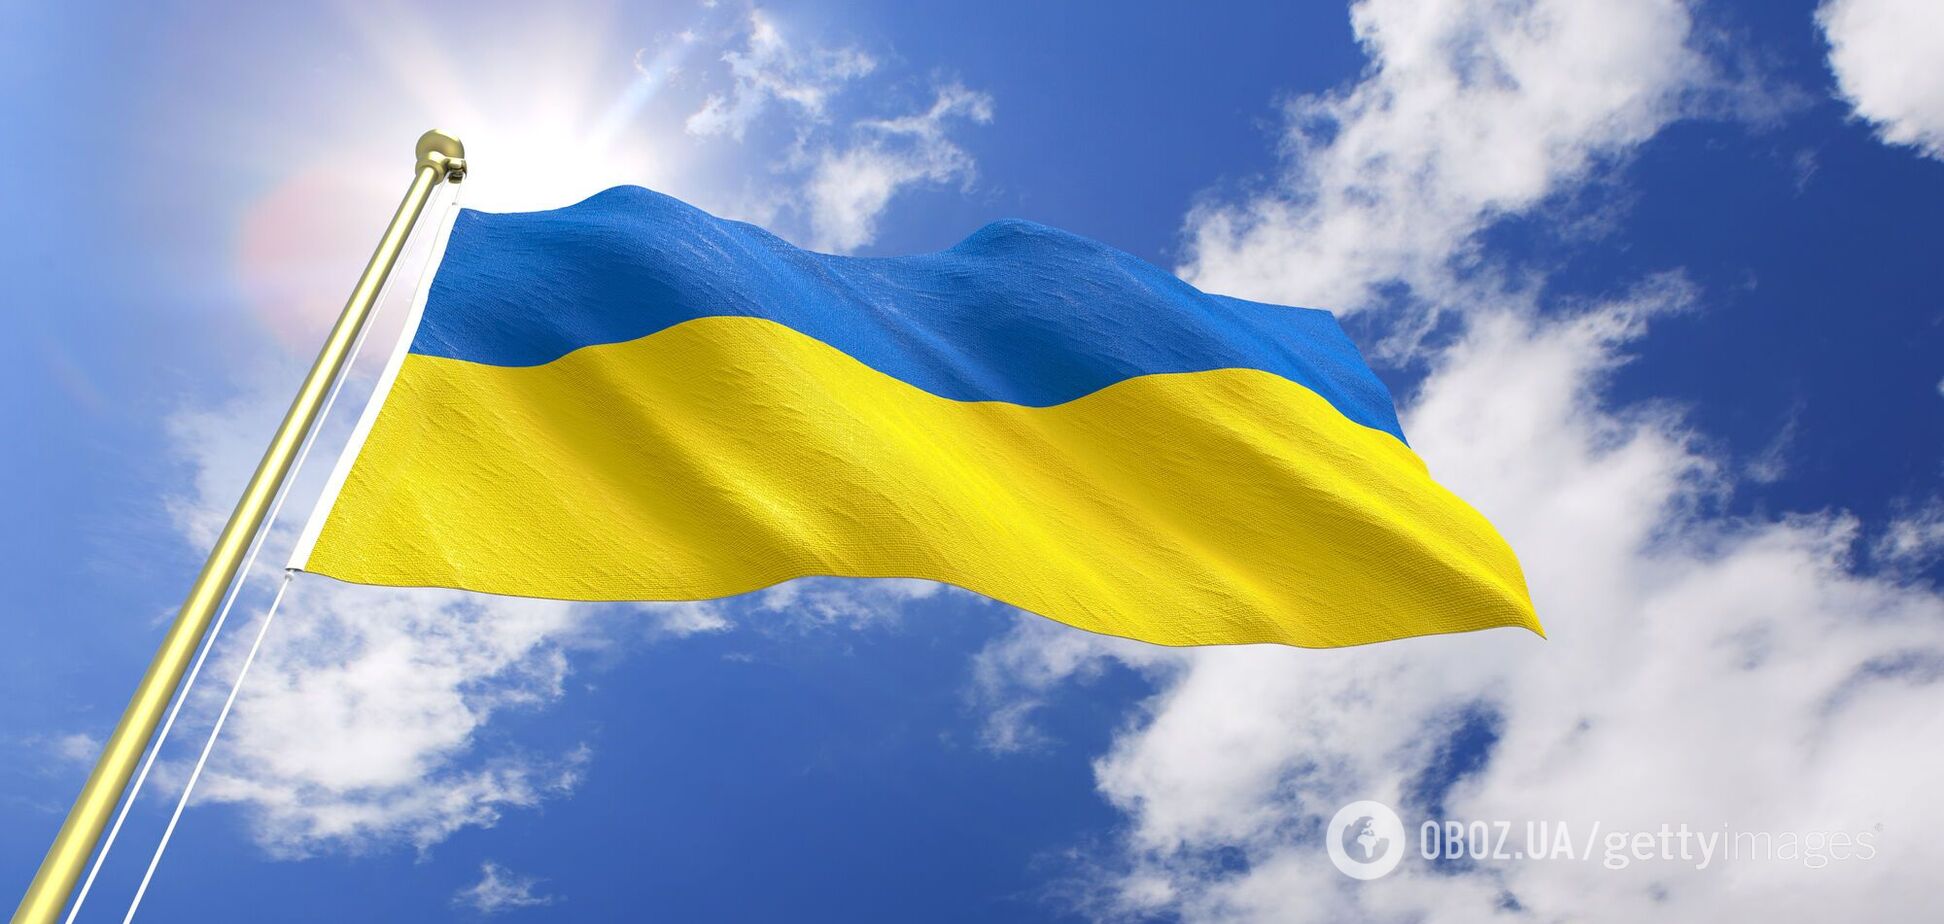 Байки про Україну, вигадані ветеранами комсомолу